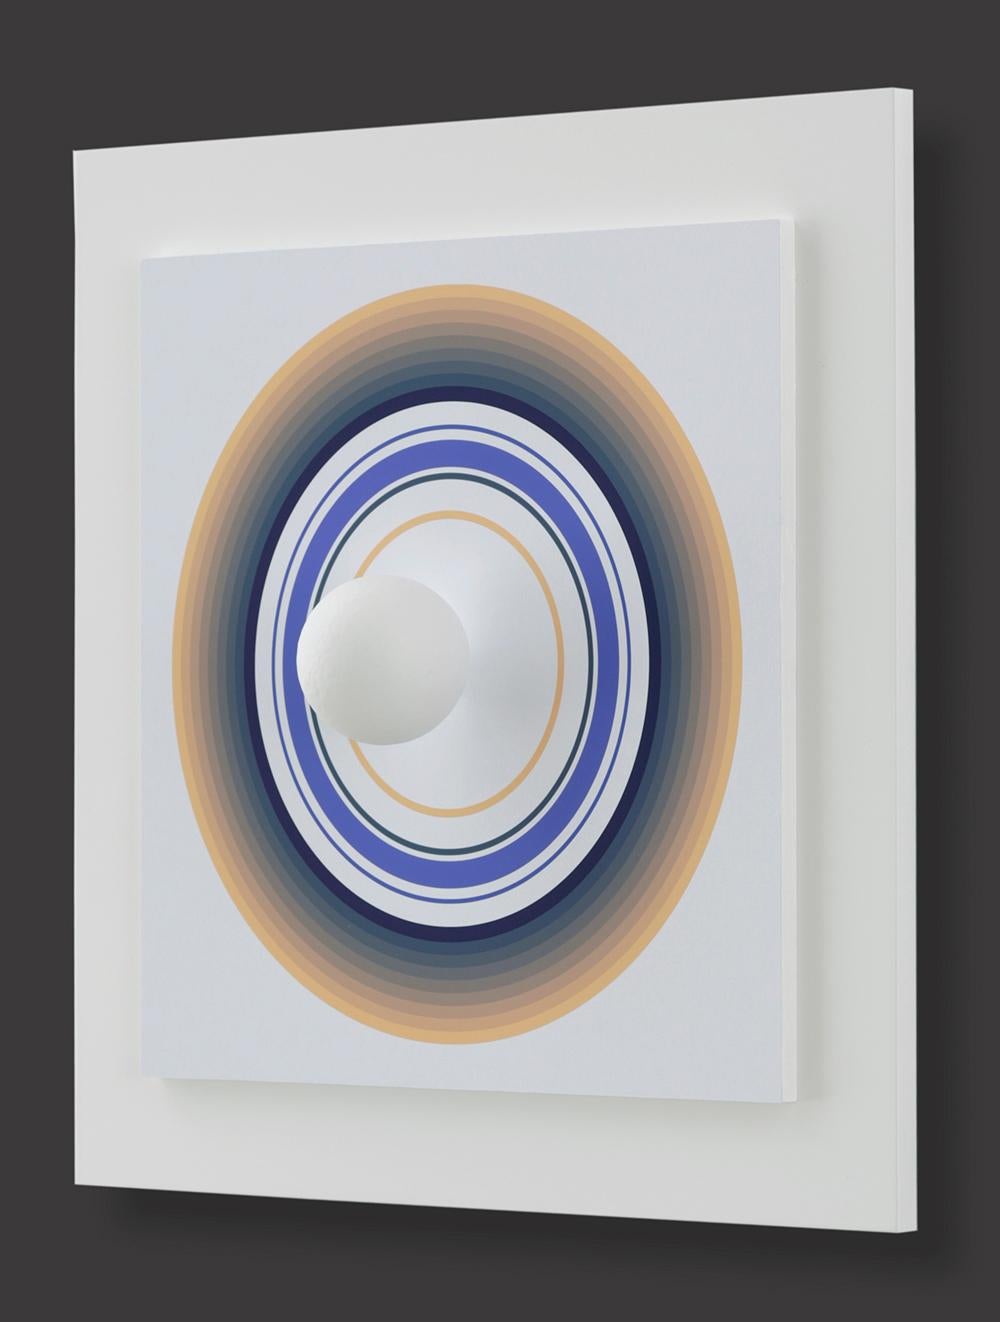 Asistype 4 - boule sur cercle - Op Art Mixed Media Art par Antonio Asis